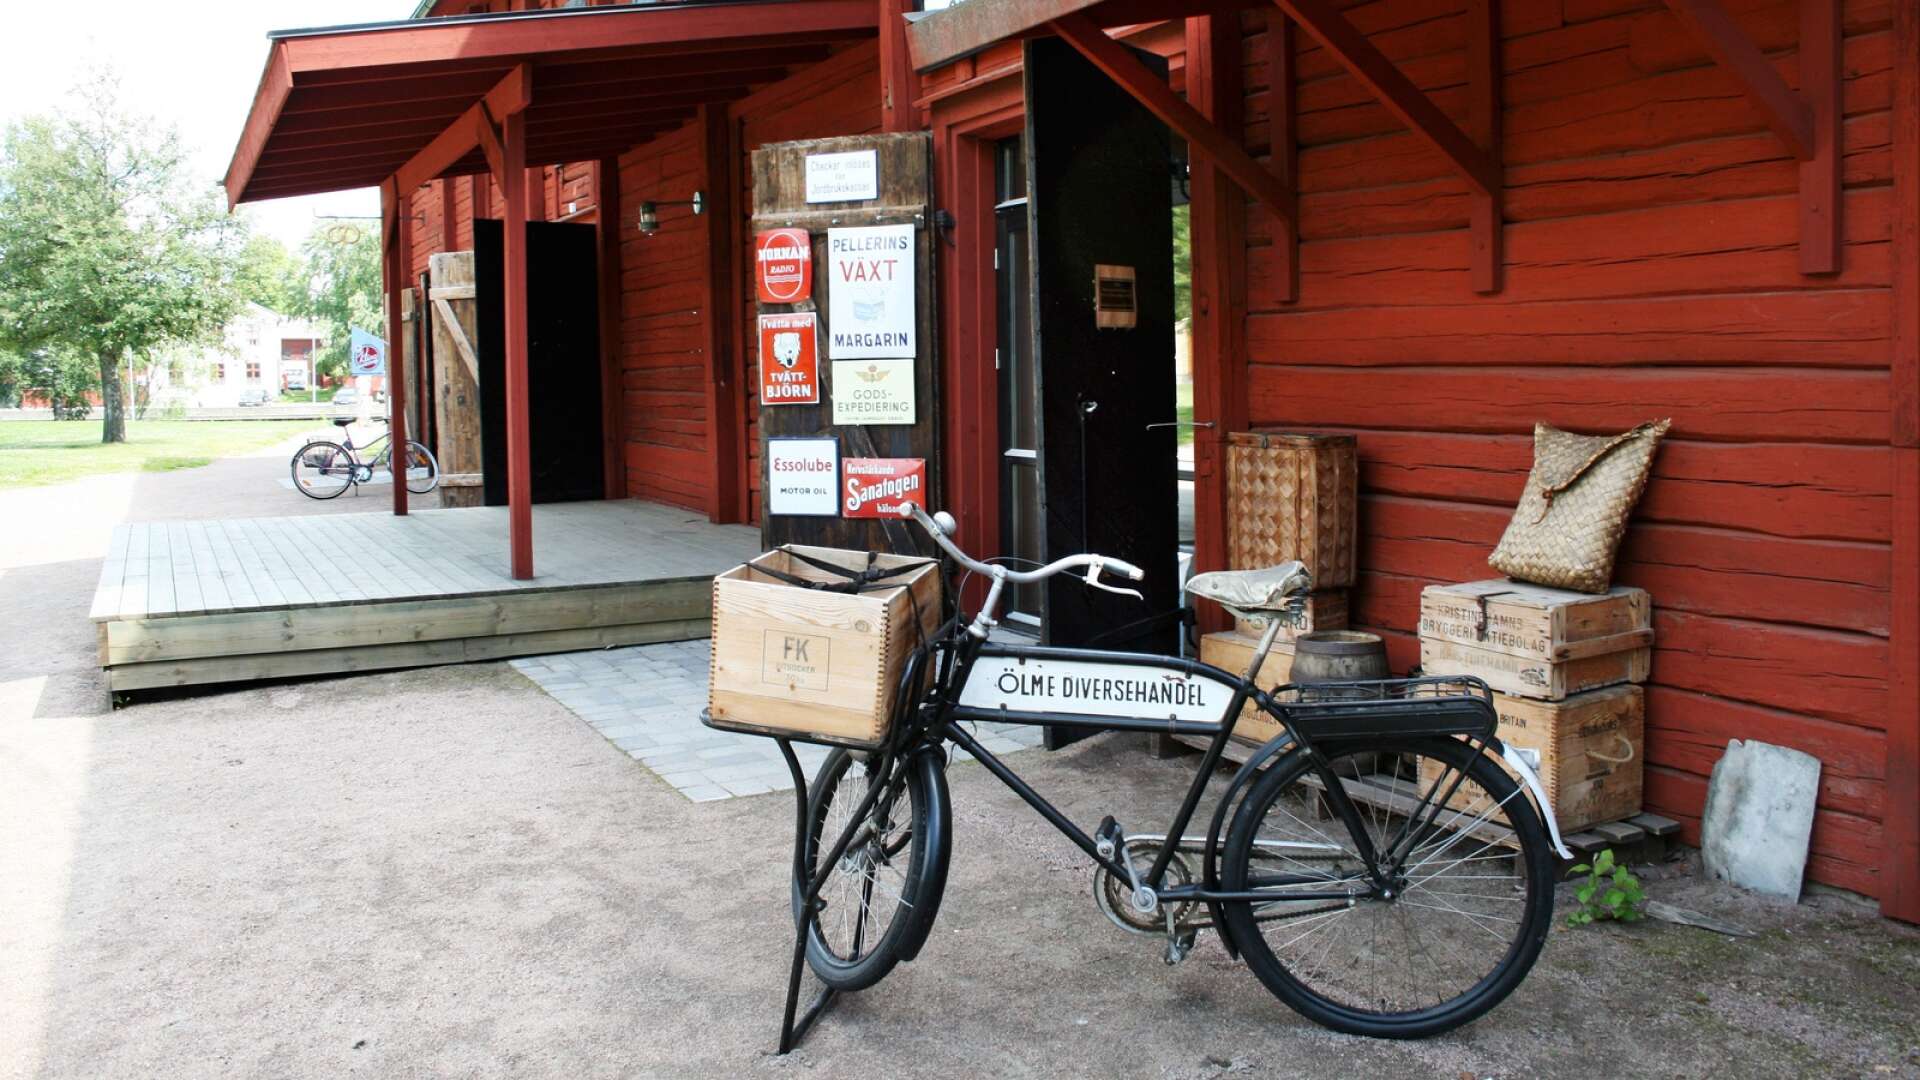 Ölme diversehandel var under många år ett av Kristinehamns populäraste besöksmål, men nu är den tiden förbi.